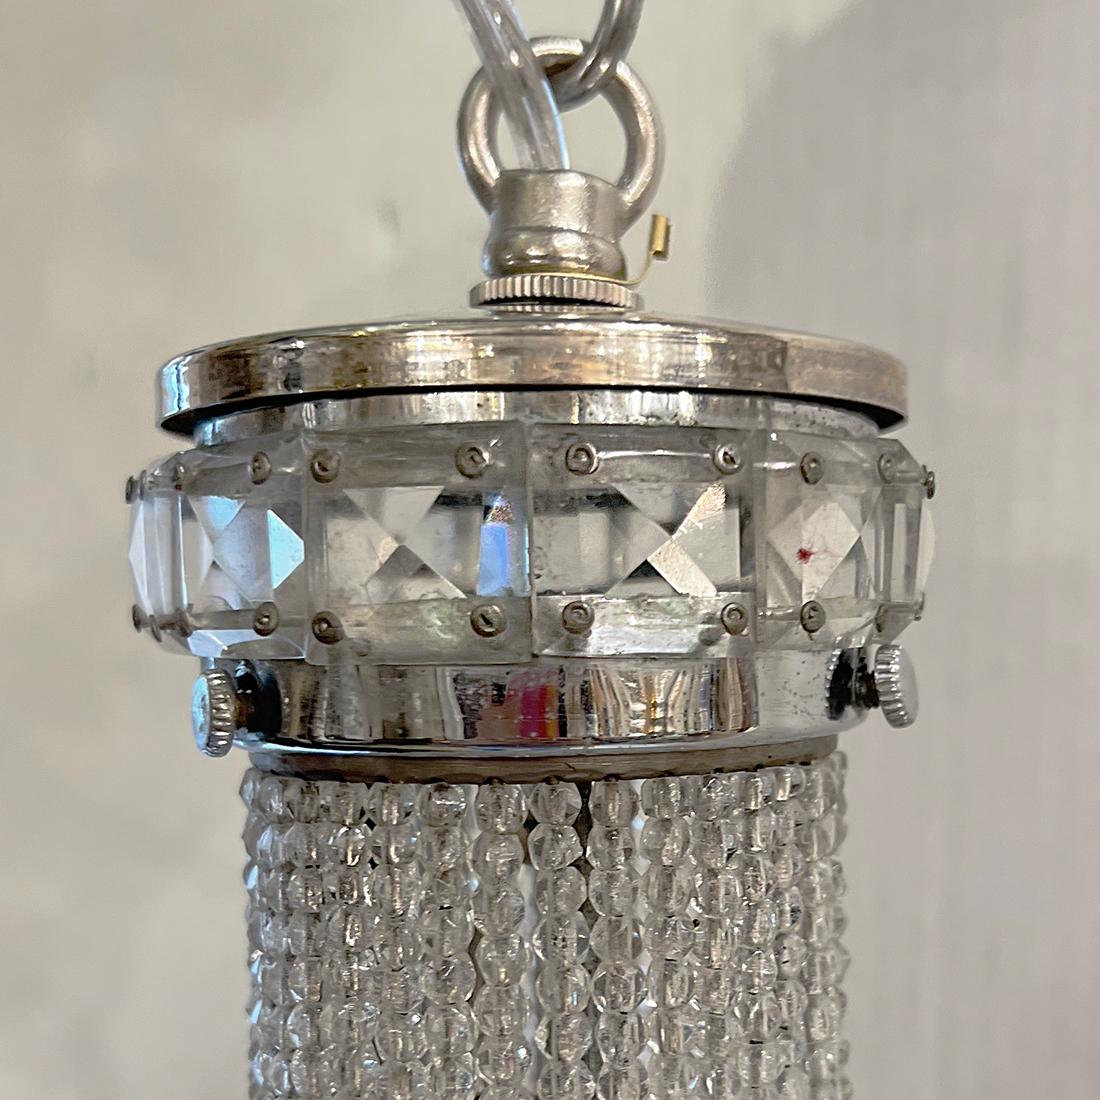 Lanterne française en cristal perlé des années 1920 avec 2 lumières intérieures.

Mesures :
Chute du présent : 20.5